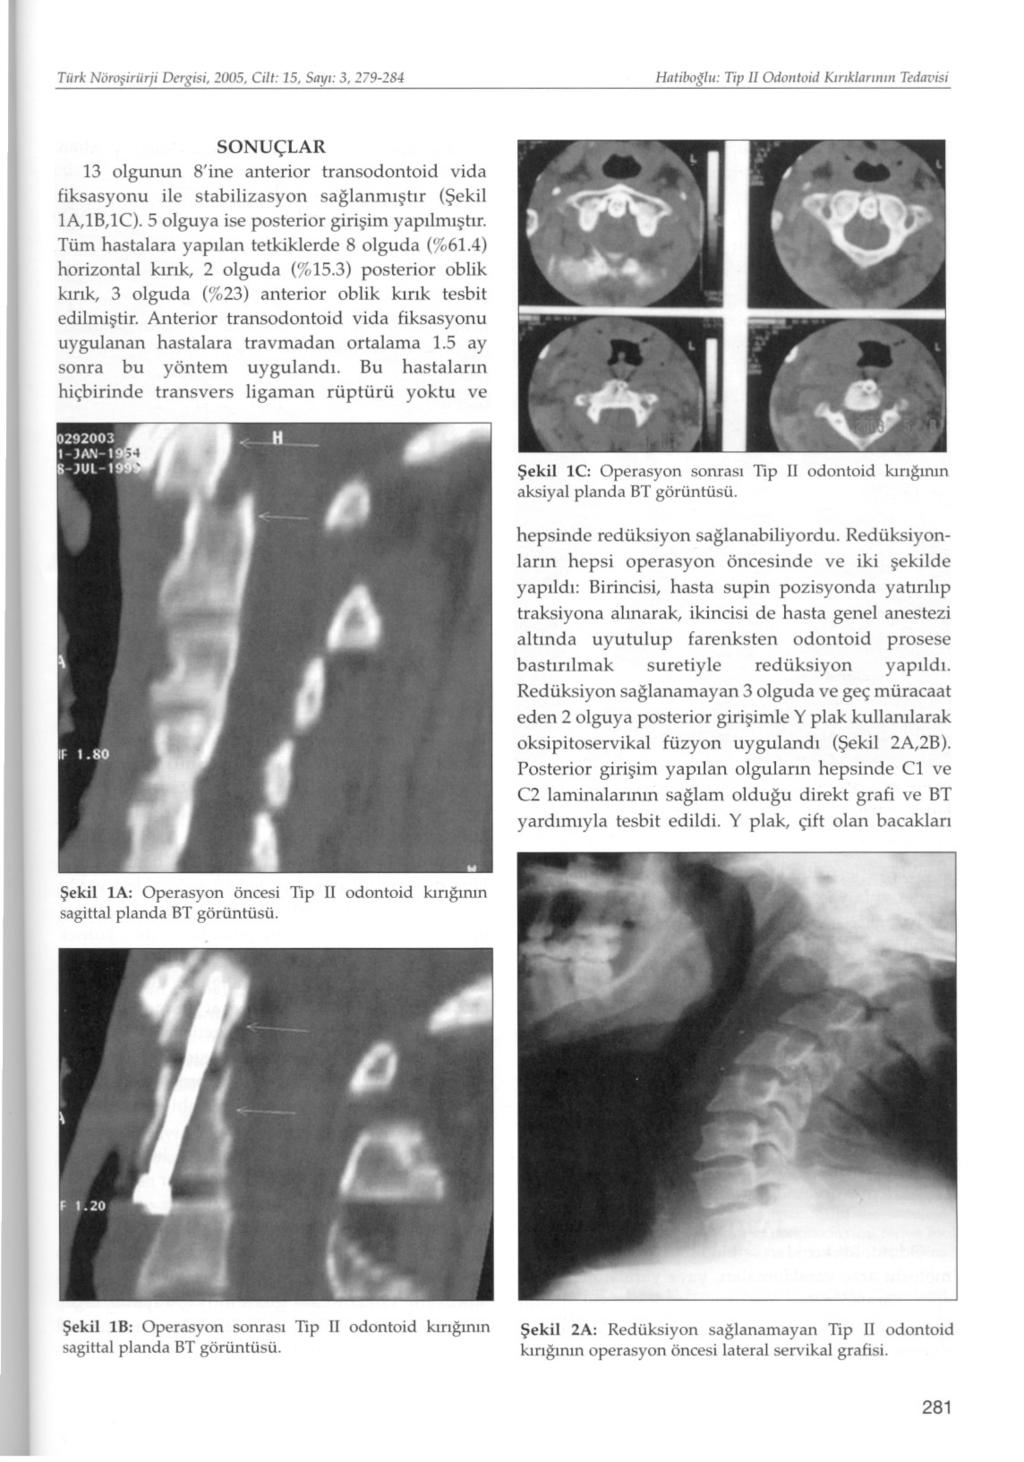 Tiirk Nörosiriirji Dergisi, 2005, Cilt: 15, Sayi: 3, 279-284 Hatibotlii: Tip II Odontoid Kiriklari/iin Tedavisi SONUÇLAR 13 olgunun 8'ine anterior transodontoid vida fiksasyonu ile stabilizasyon